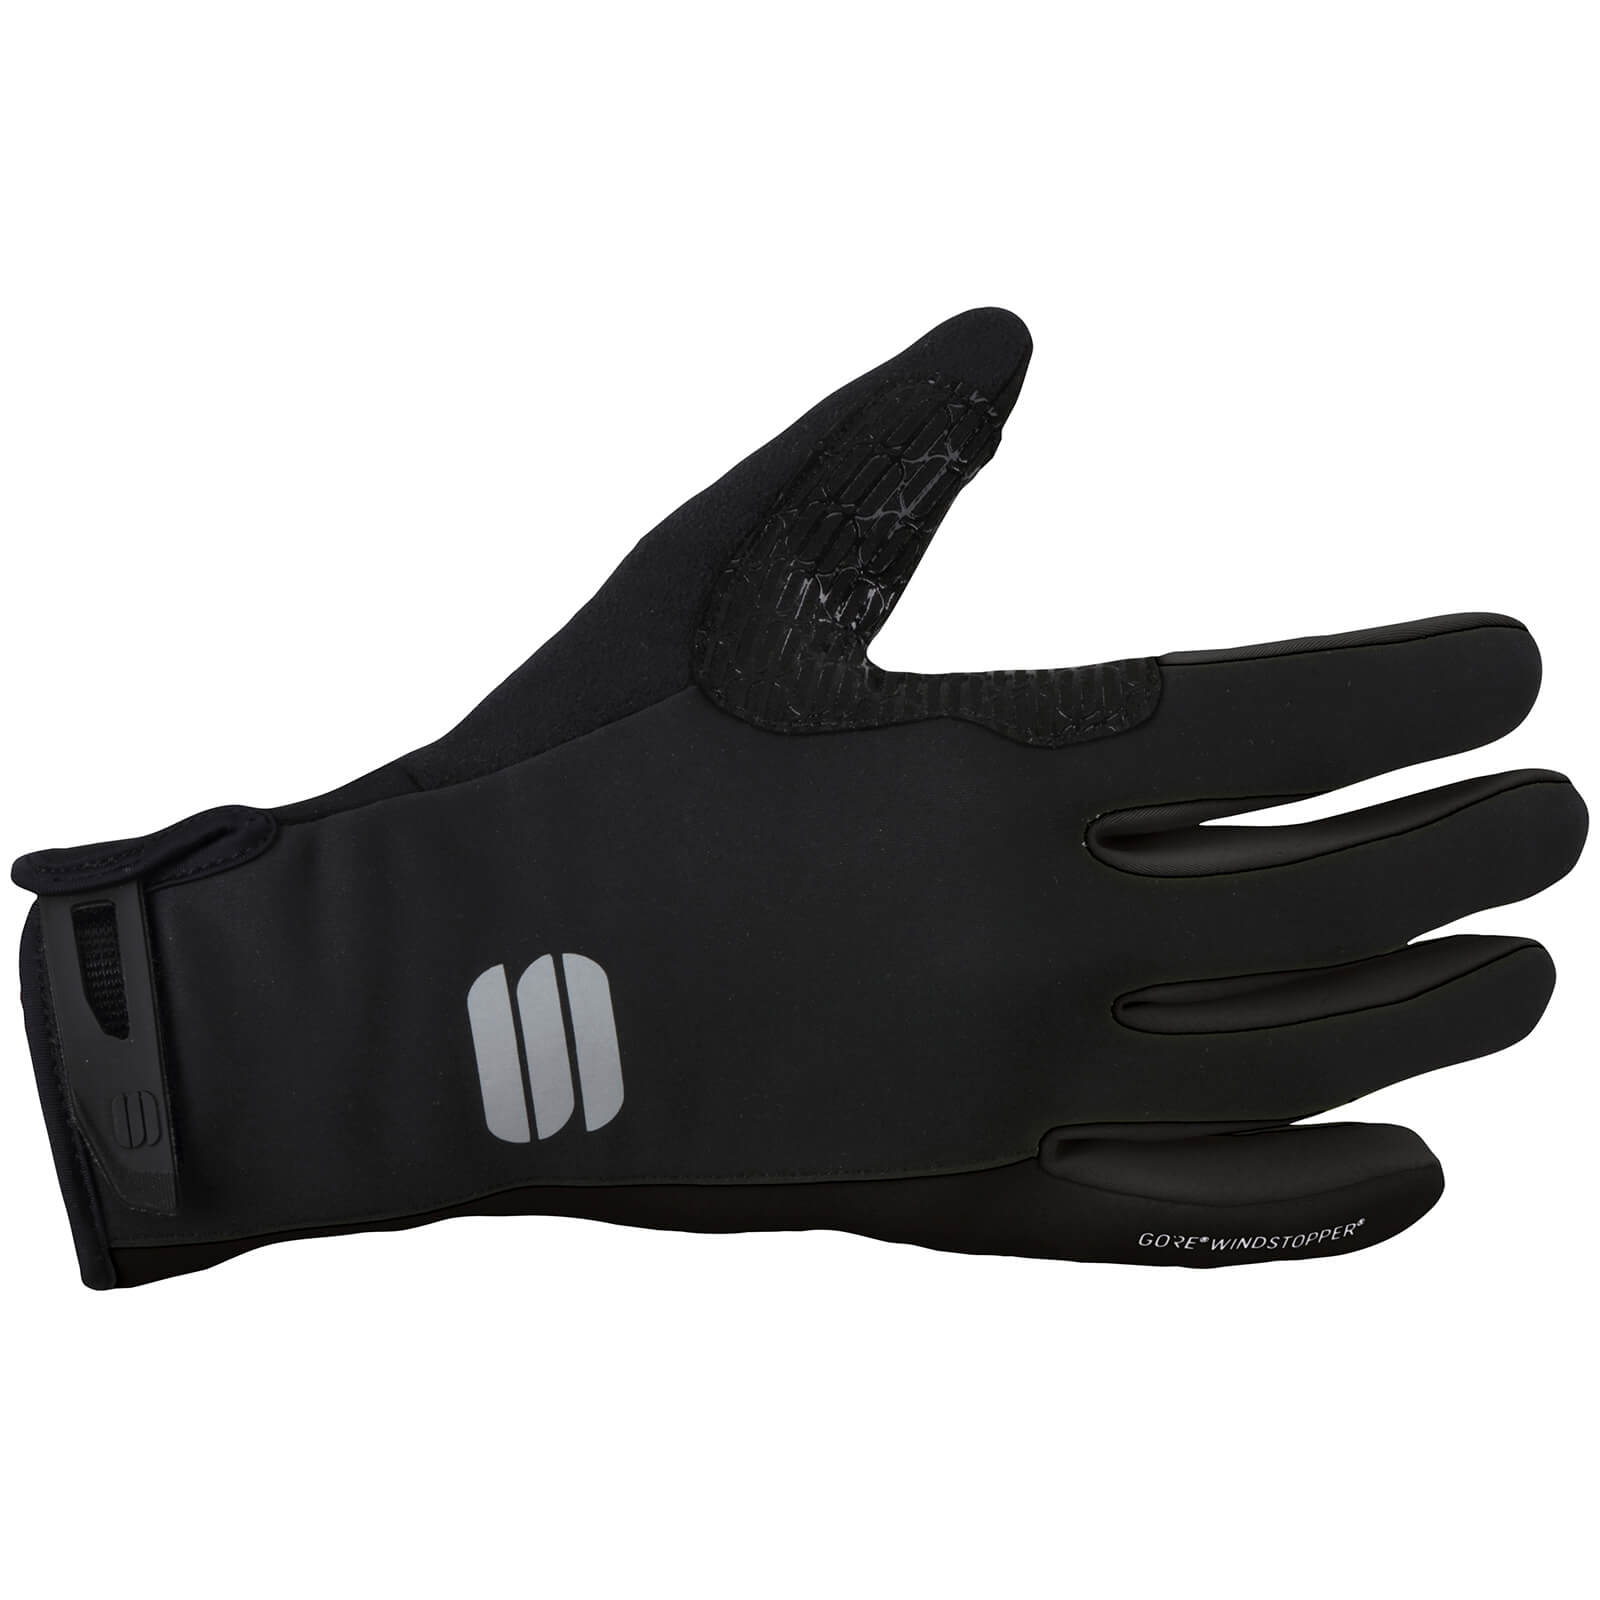 Sportful WS Essential 2 Gloves - S - Black